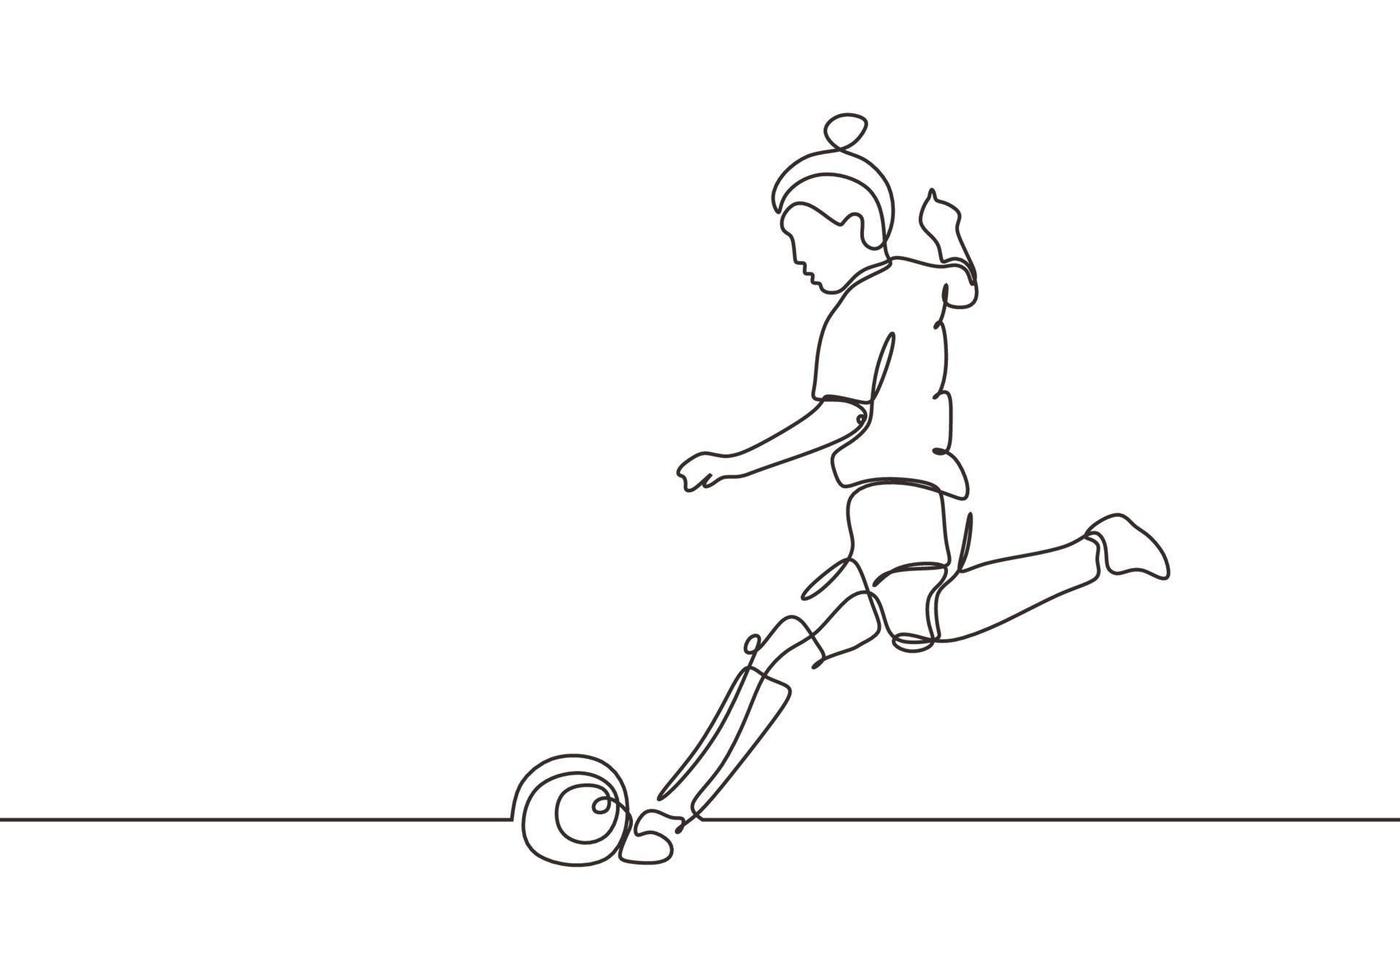 continua una donna di disegno a tratteggio calcia un pallone sullo sport della partita di calcio vettore